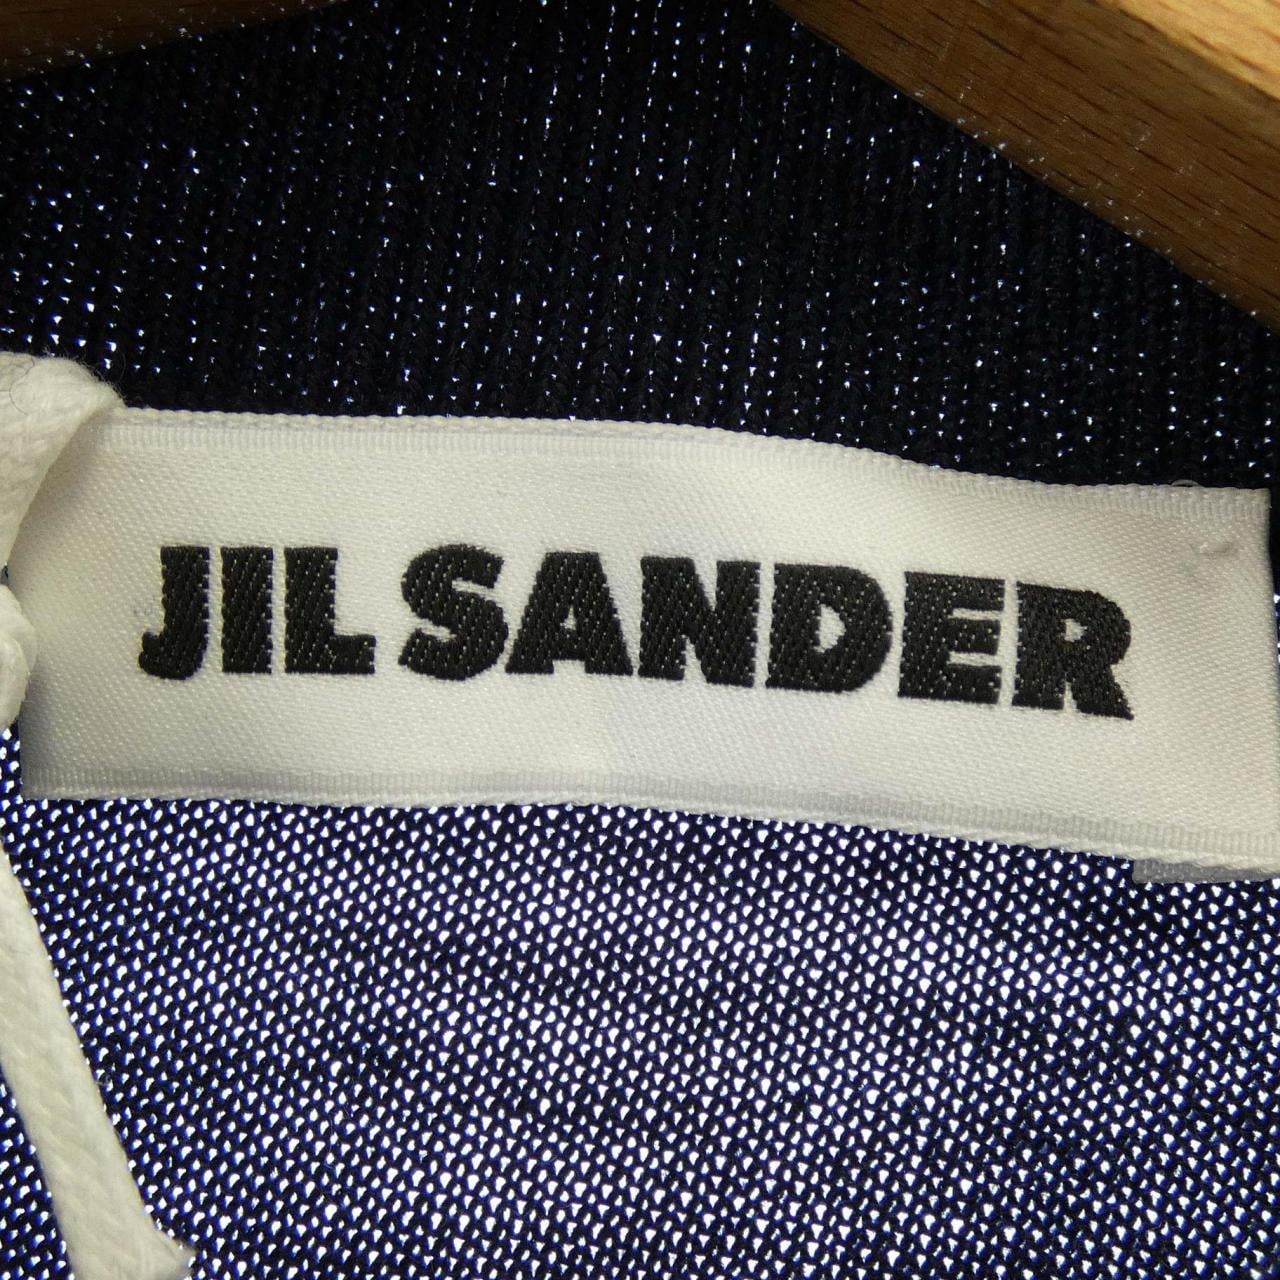 JIL SANDER SANDER Knit